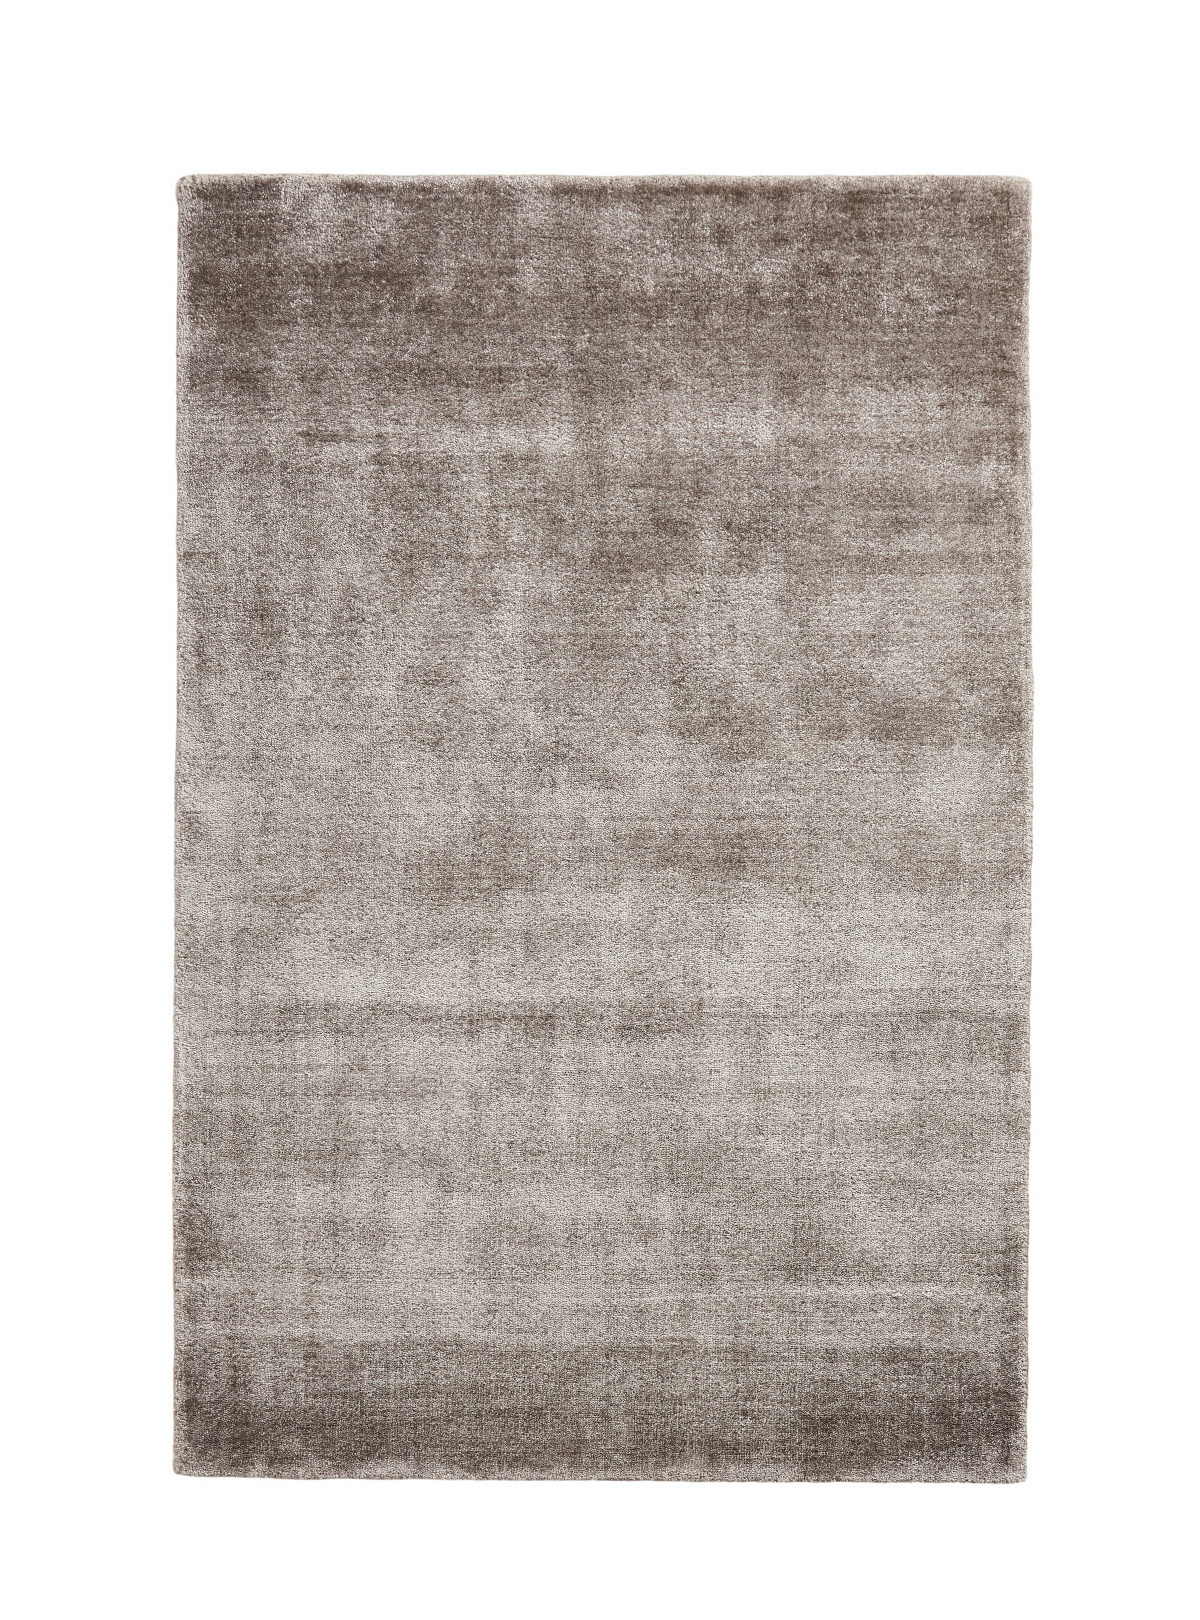 Tint Teppich, 200 x 300 cm, beige